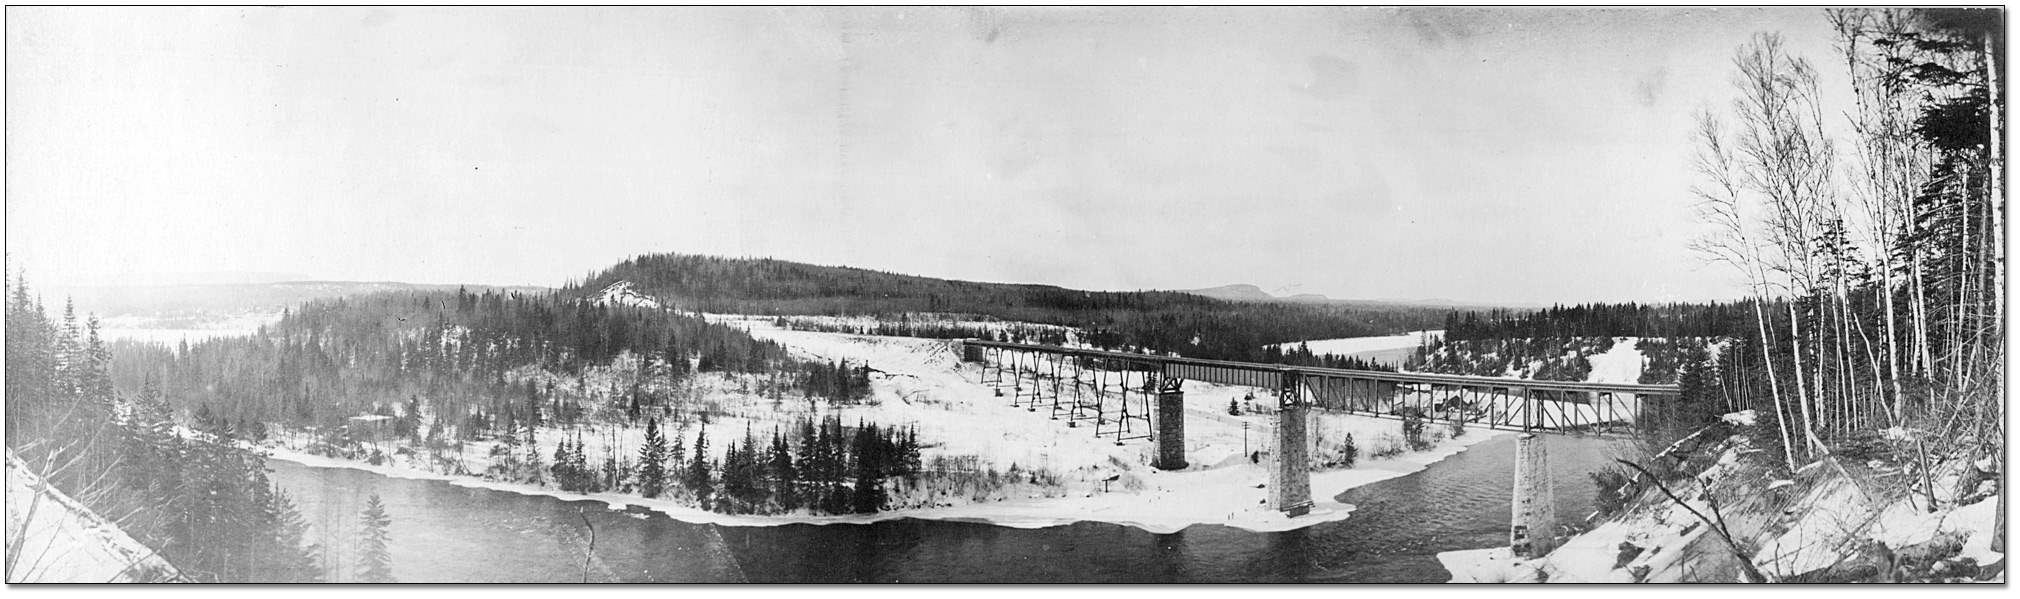 Photo: Unidentified railway bridge over a river, [ca. 1915]